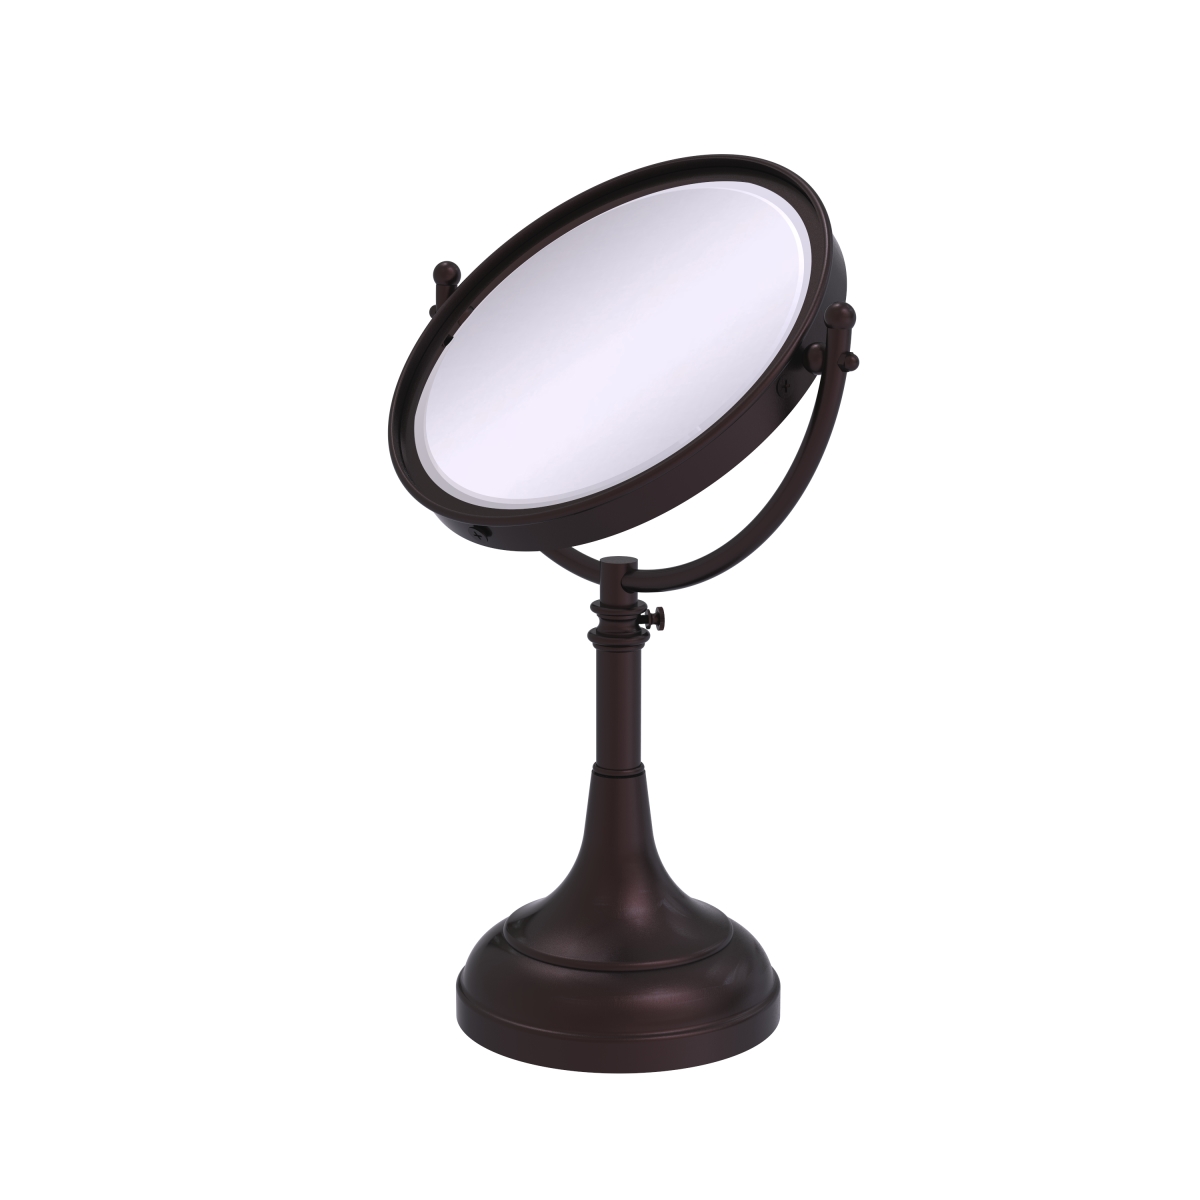 Dm-1-3x-abz Height Adjustable 8 In. Vanity Top Make-up Mirror 3x Magnification, Antique Bronze